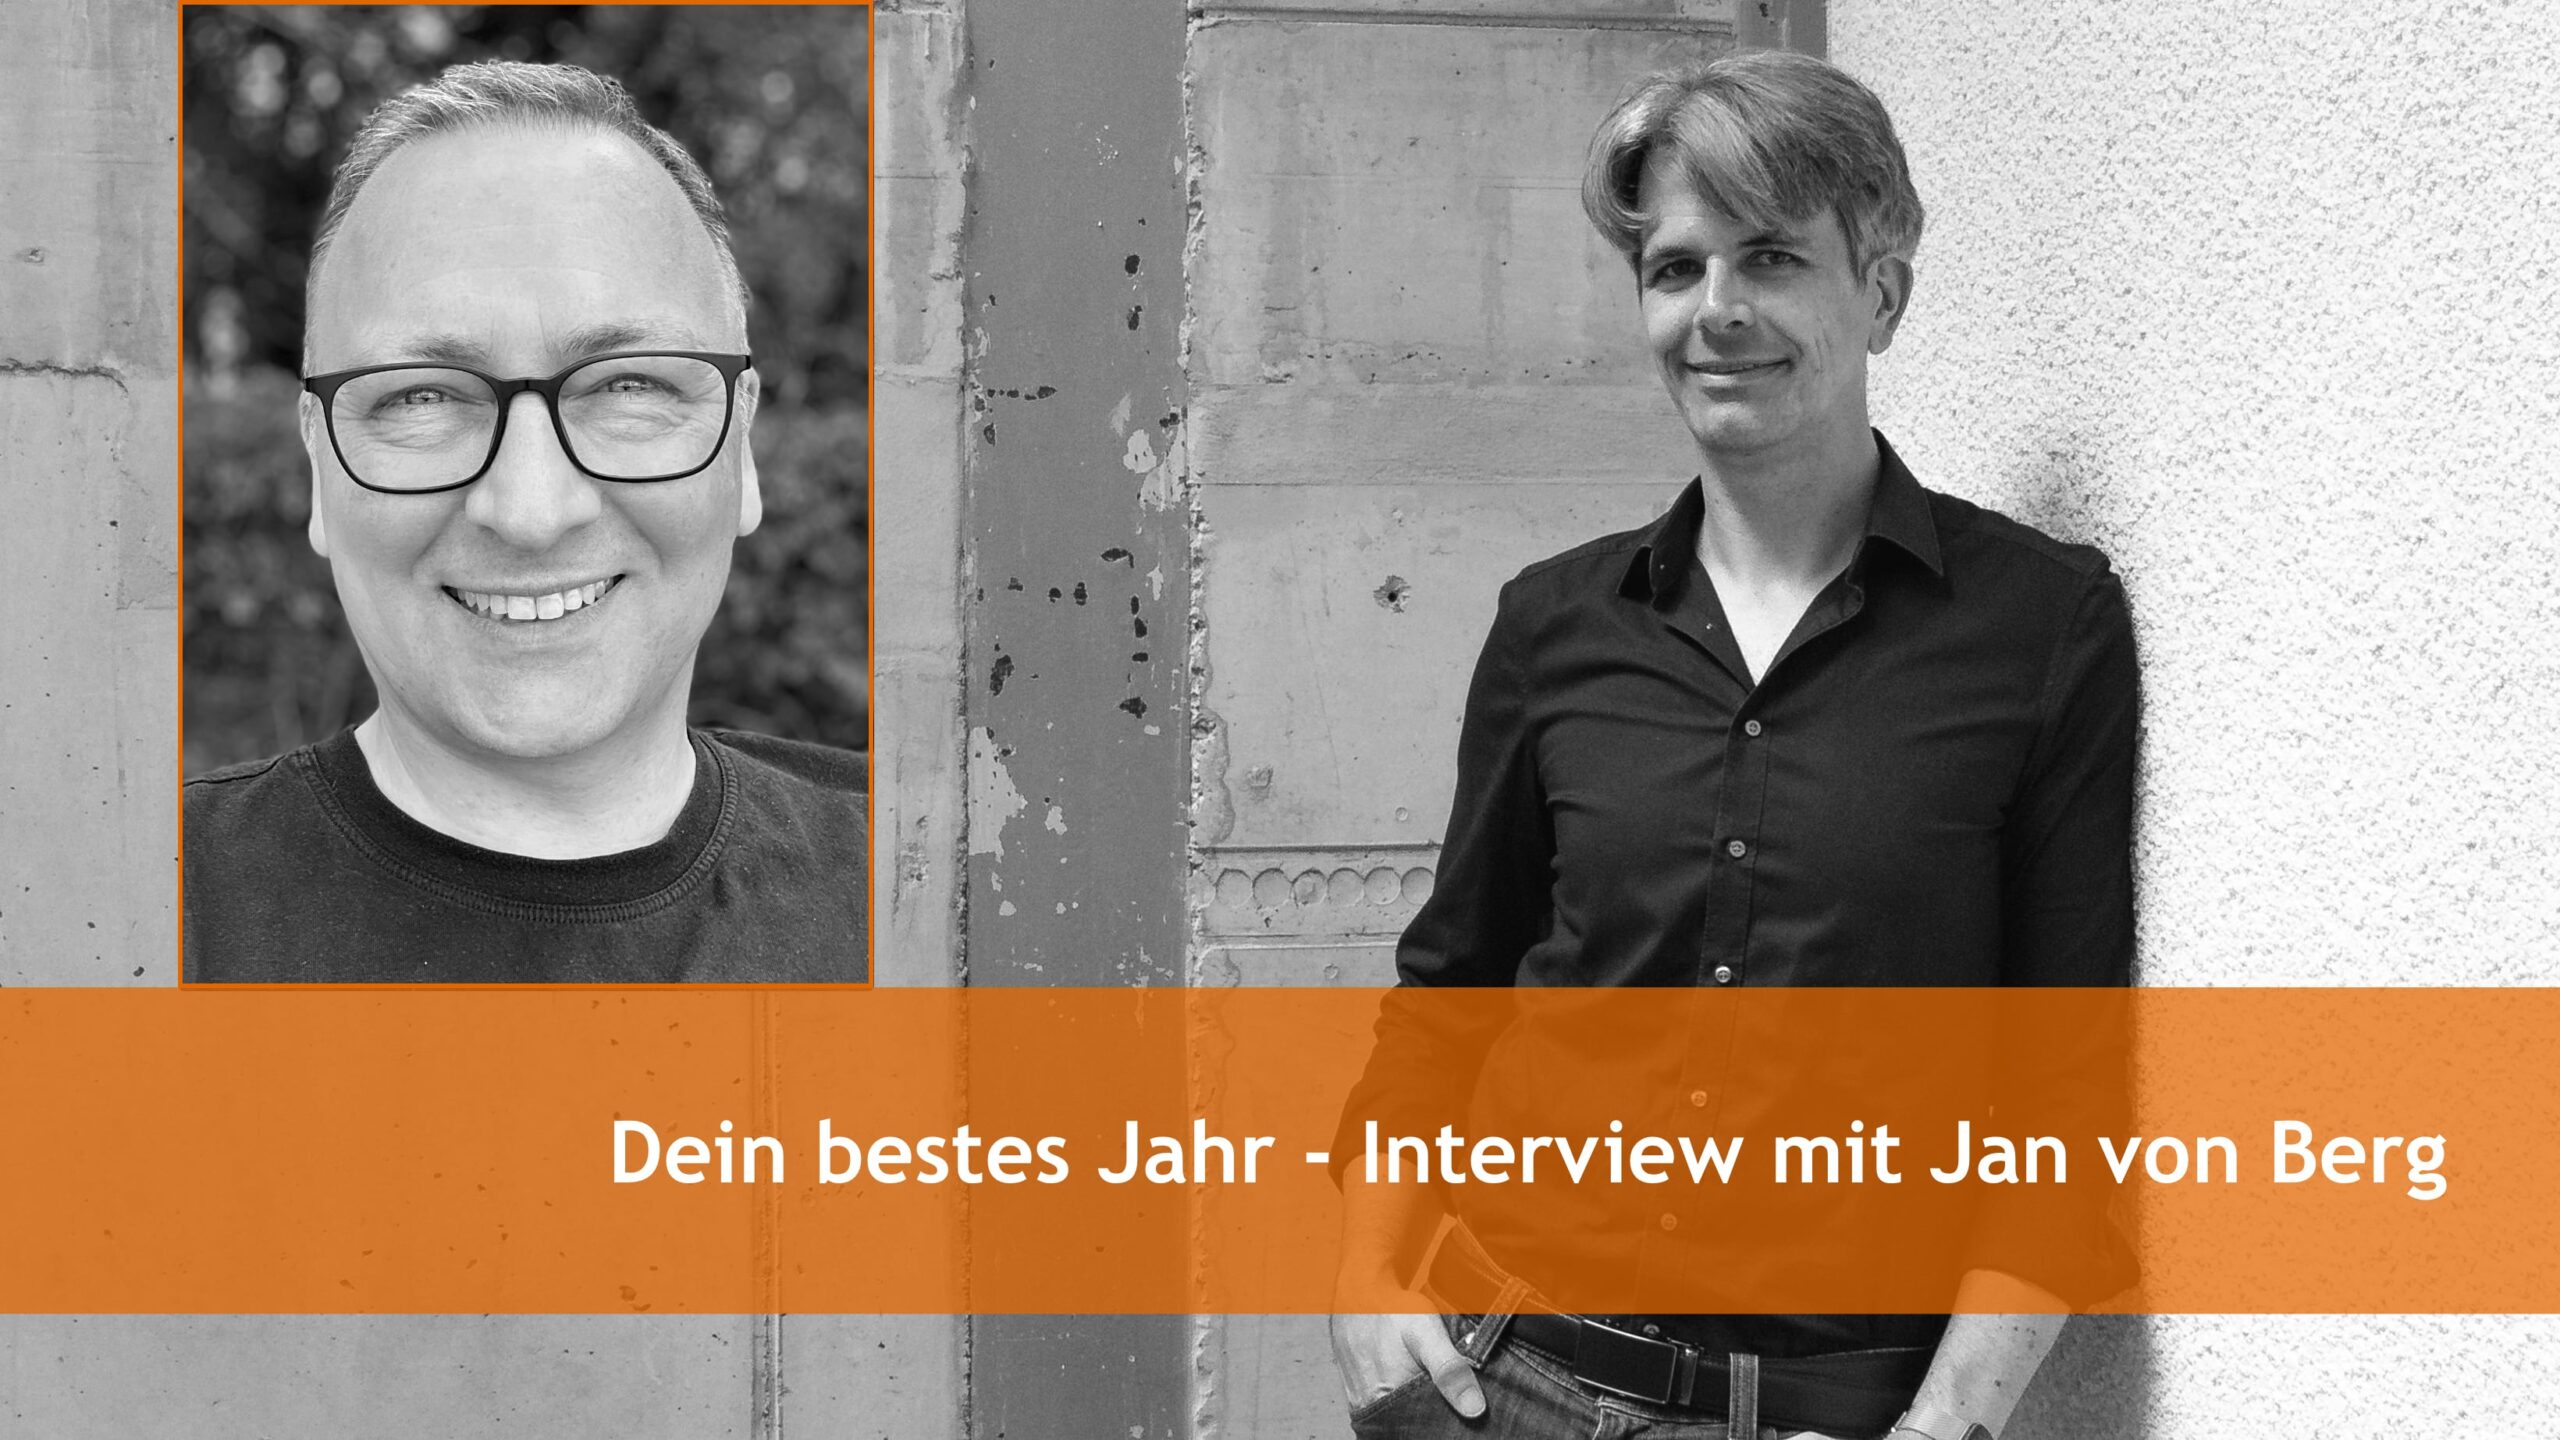 Dein bestes Jahr - Interview mit Jan von Berg